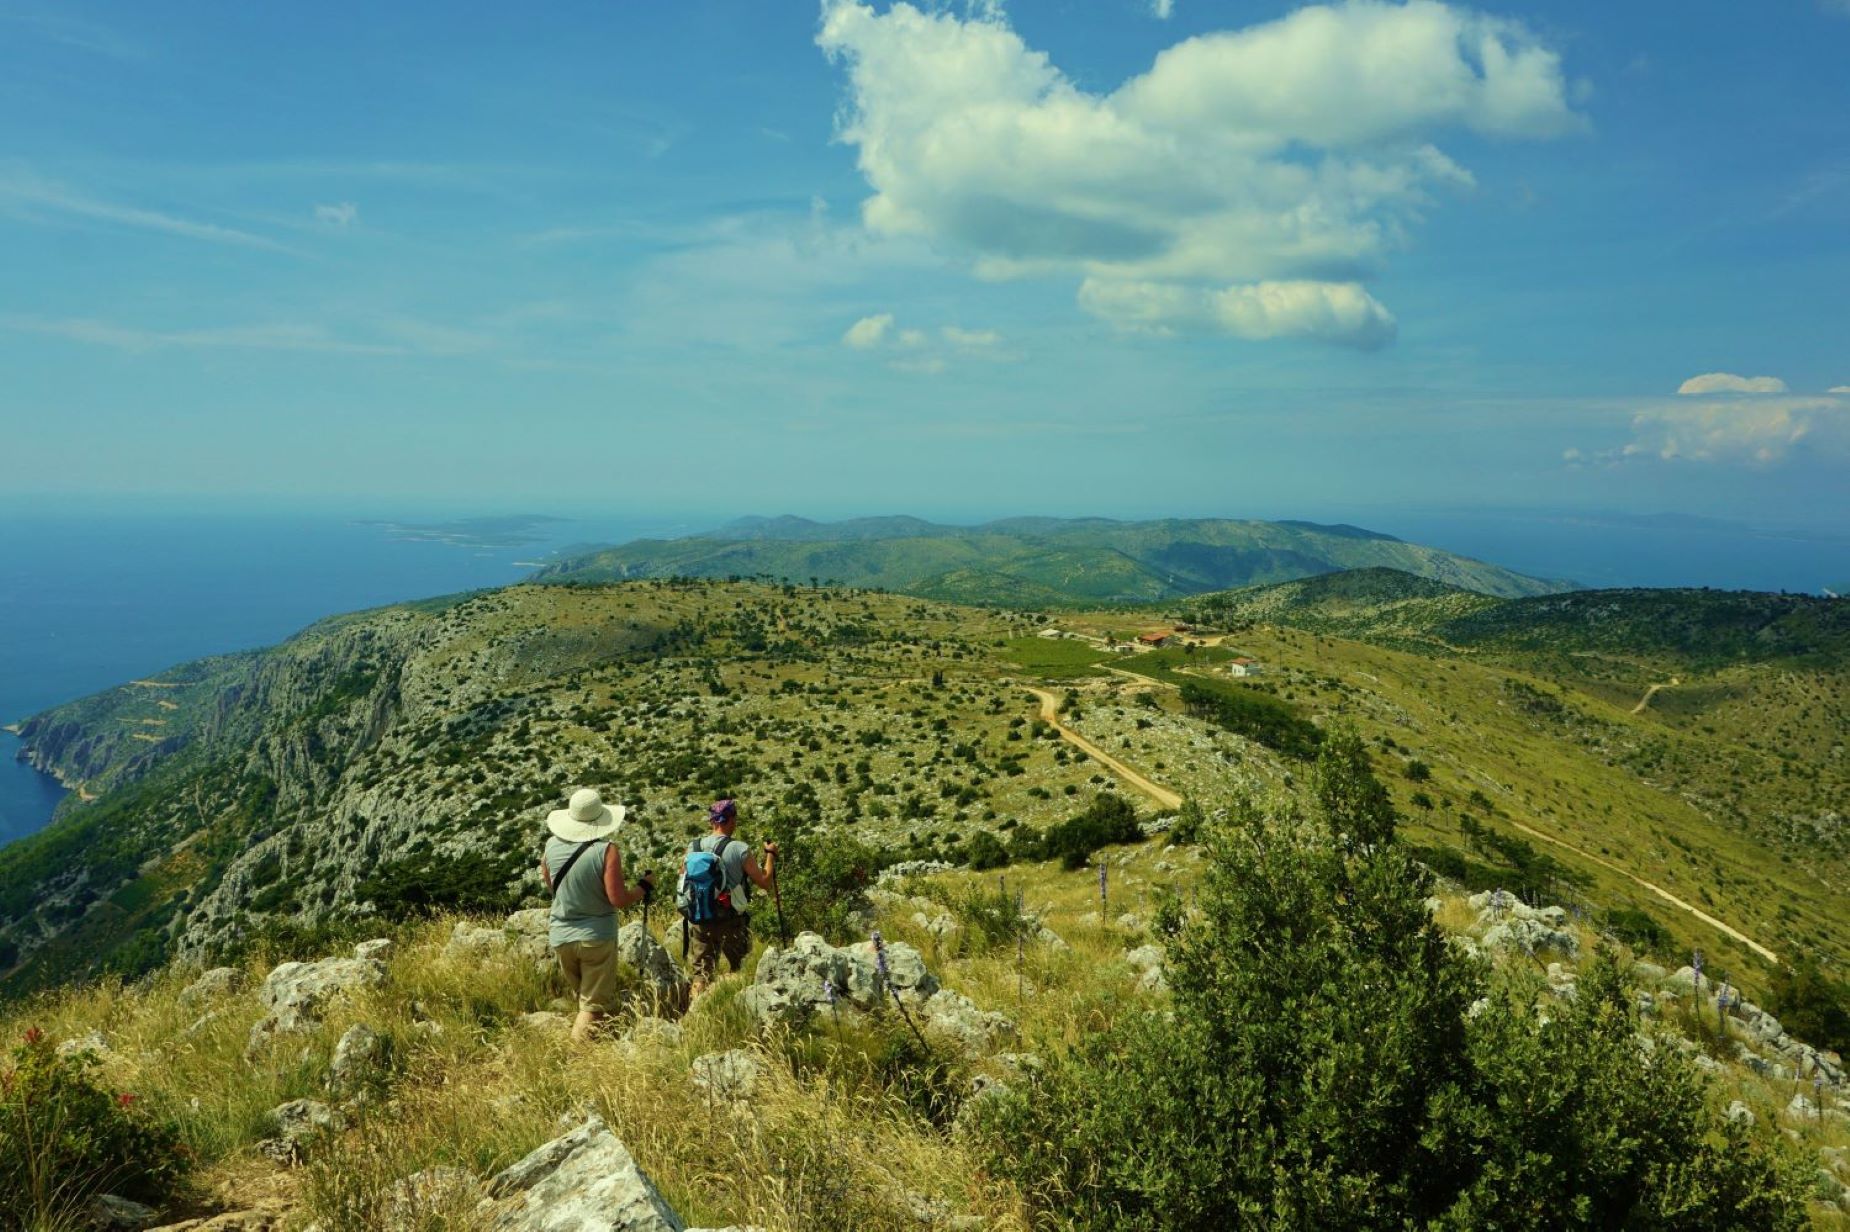 KNMtravel DMC, Sol, mar & montañas, Croacia, Hvar, senderismo, actividades al aire libre, naturaleza